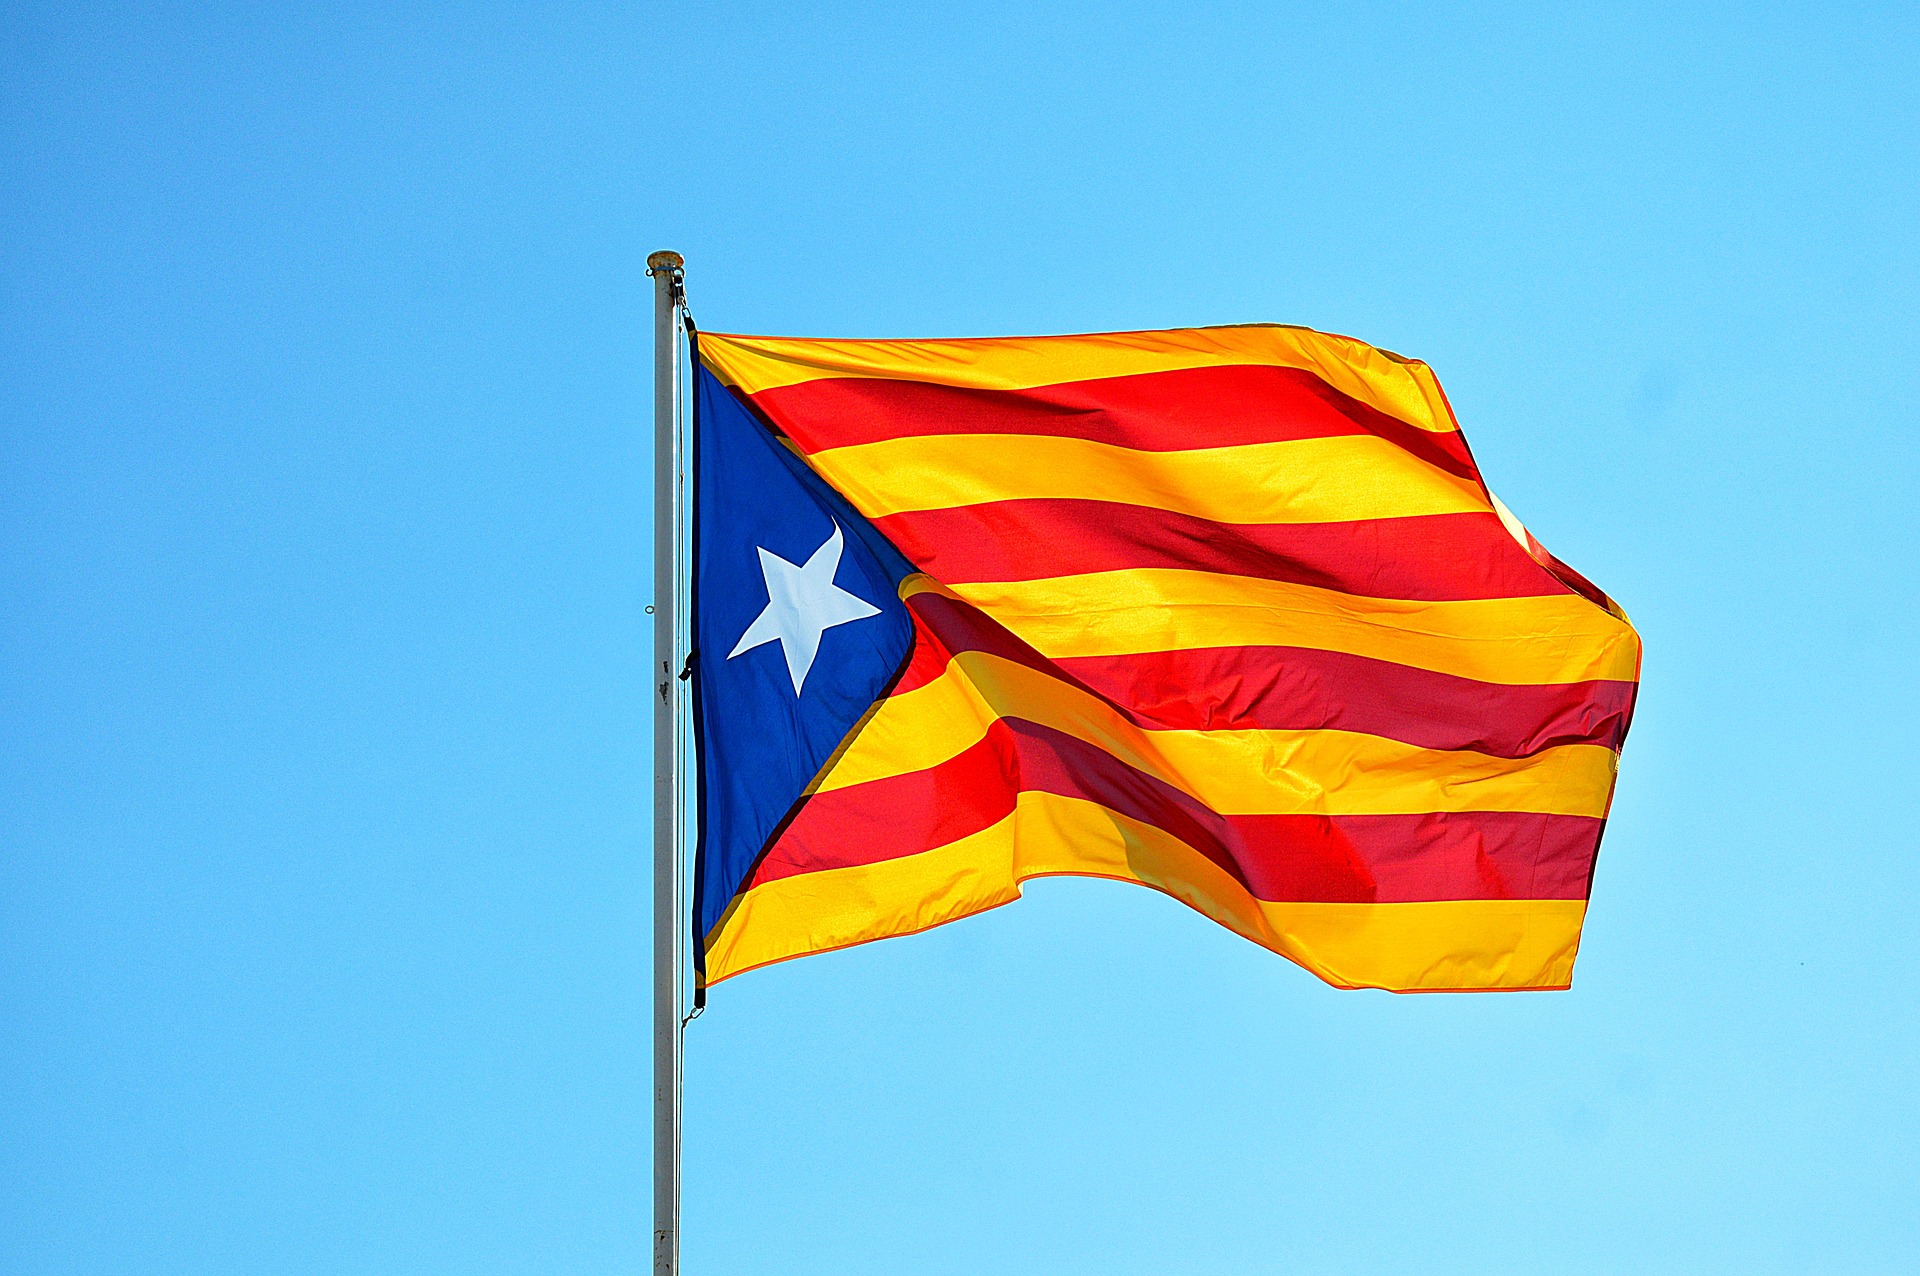 Aufhebung der Immunität dreier katalanischer EU-Abgeordneter ist eine Schande